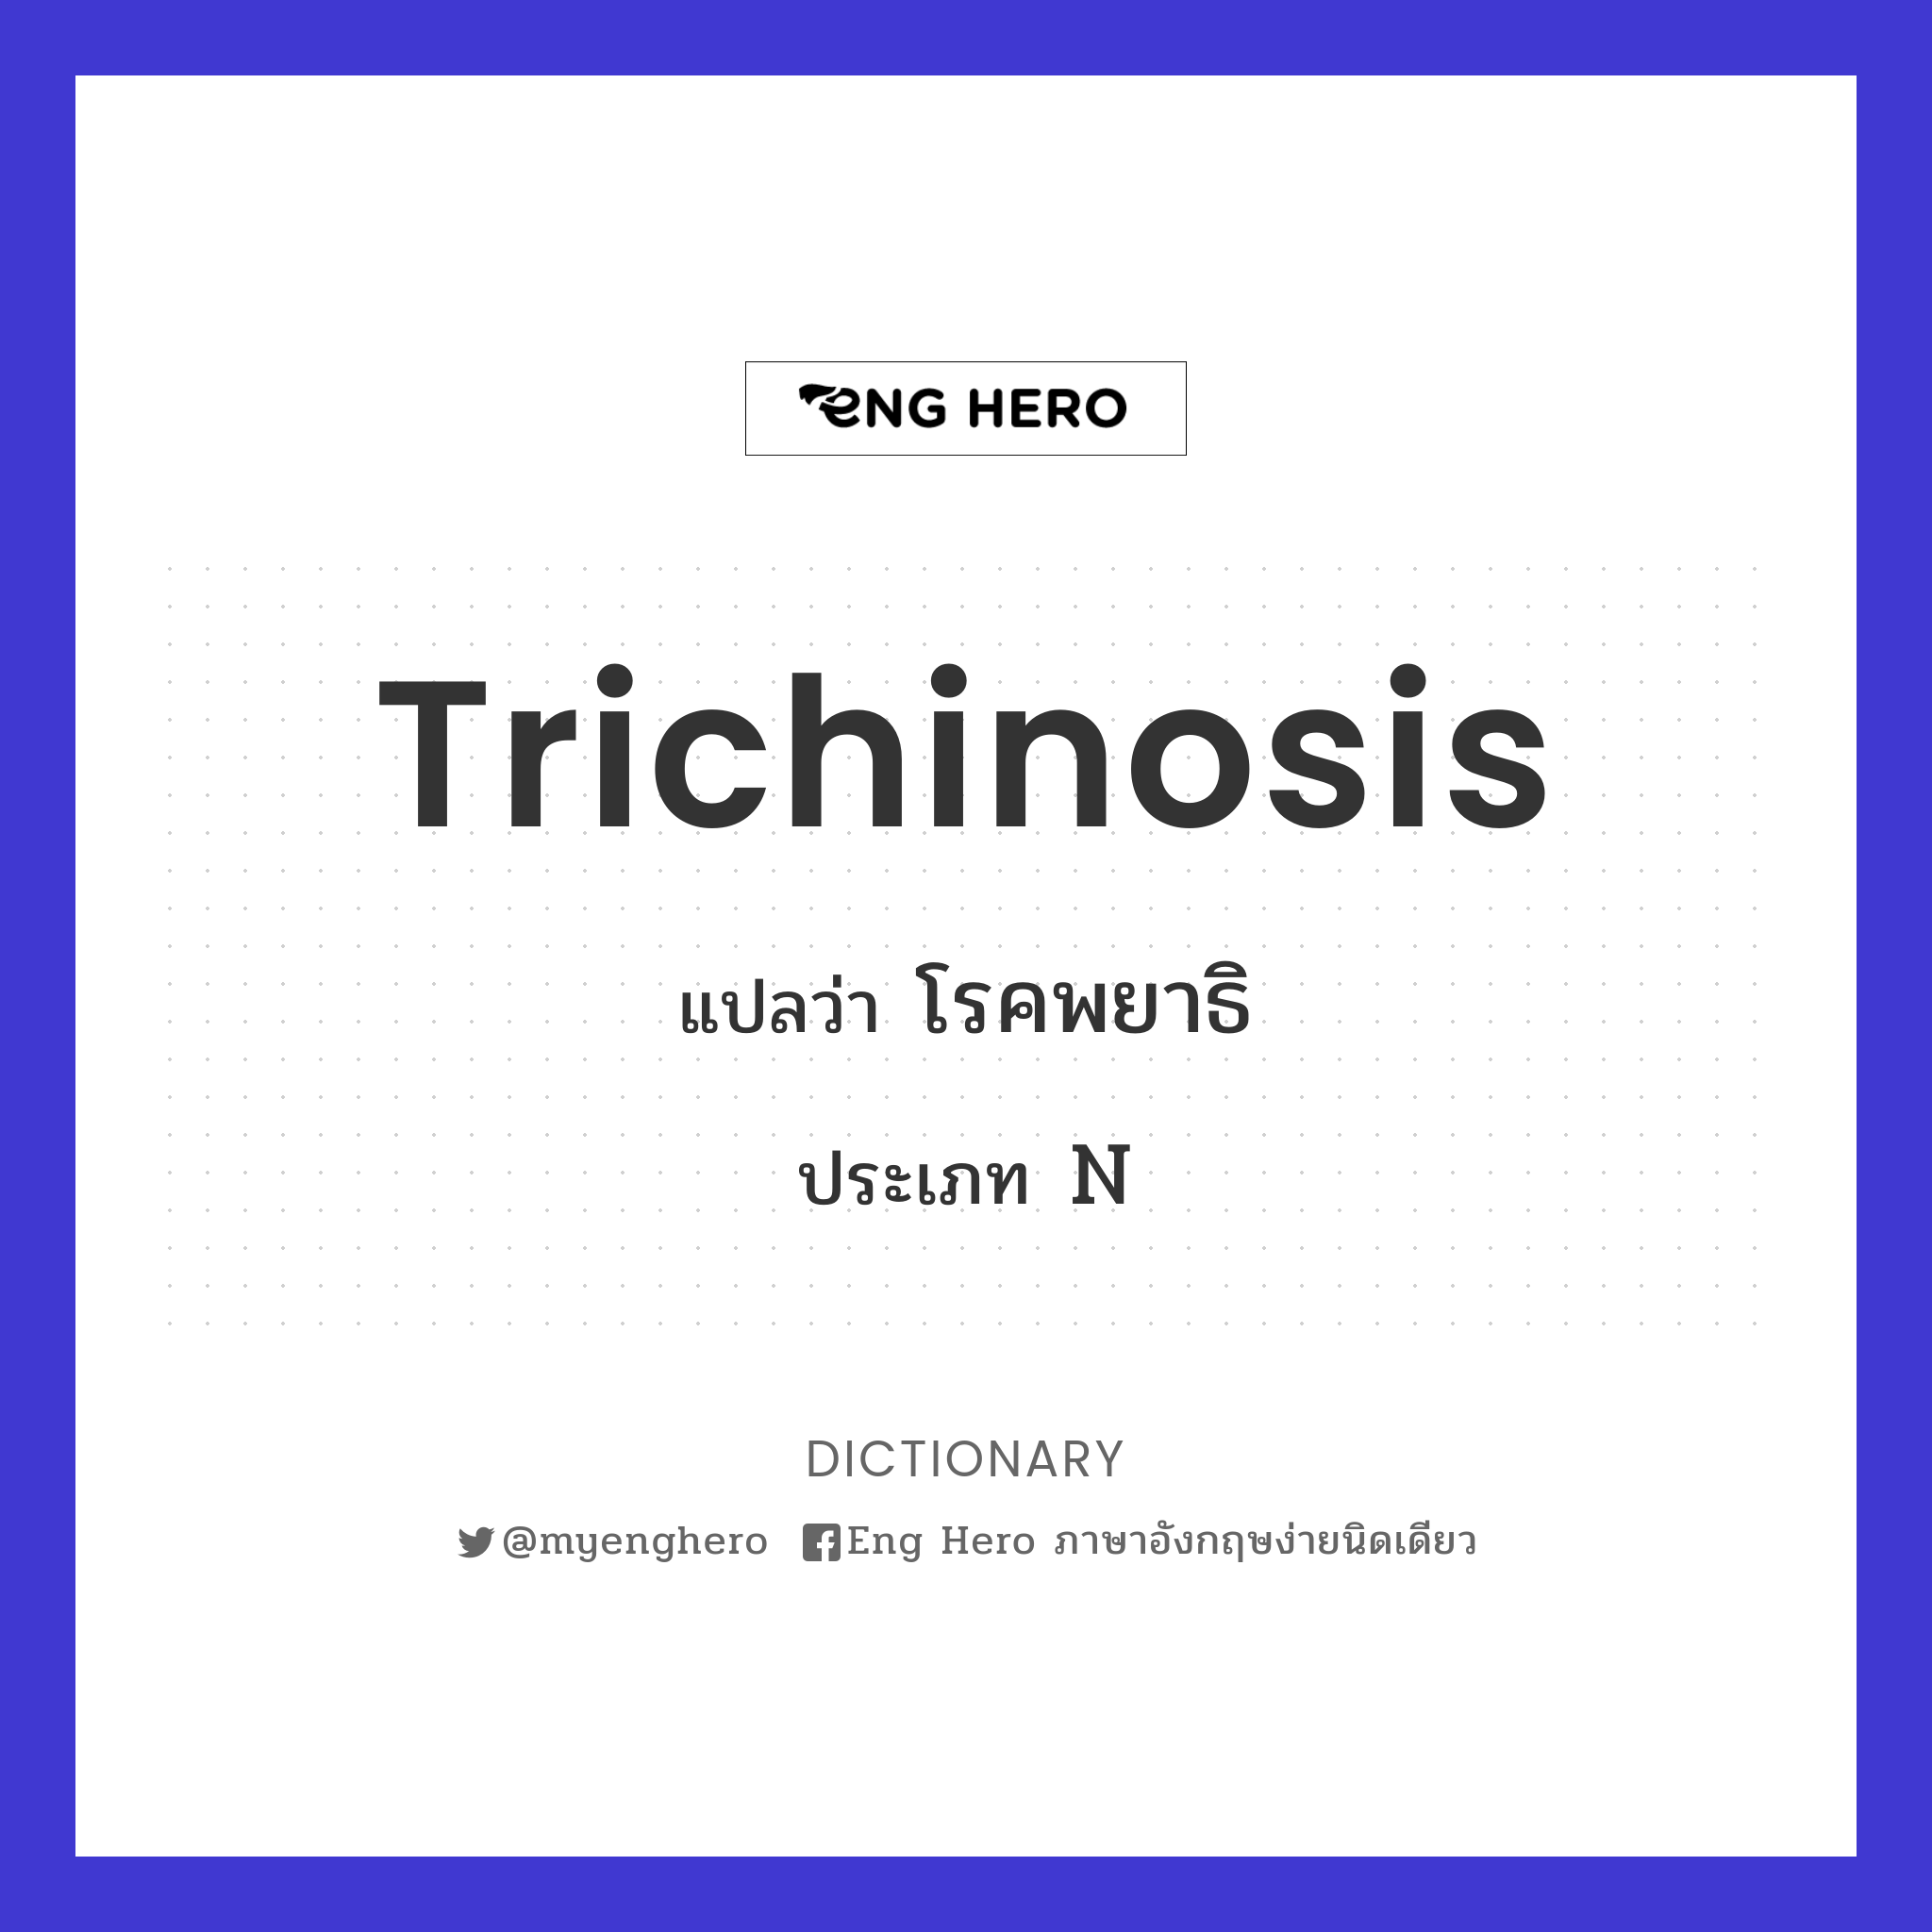 trichinosis